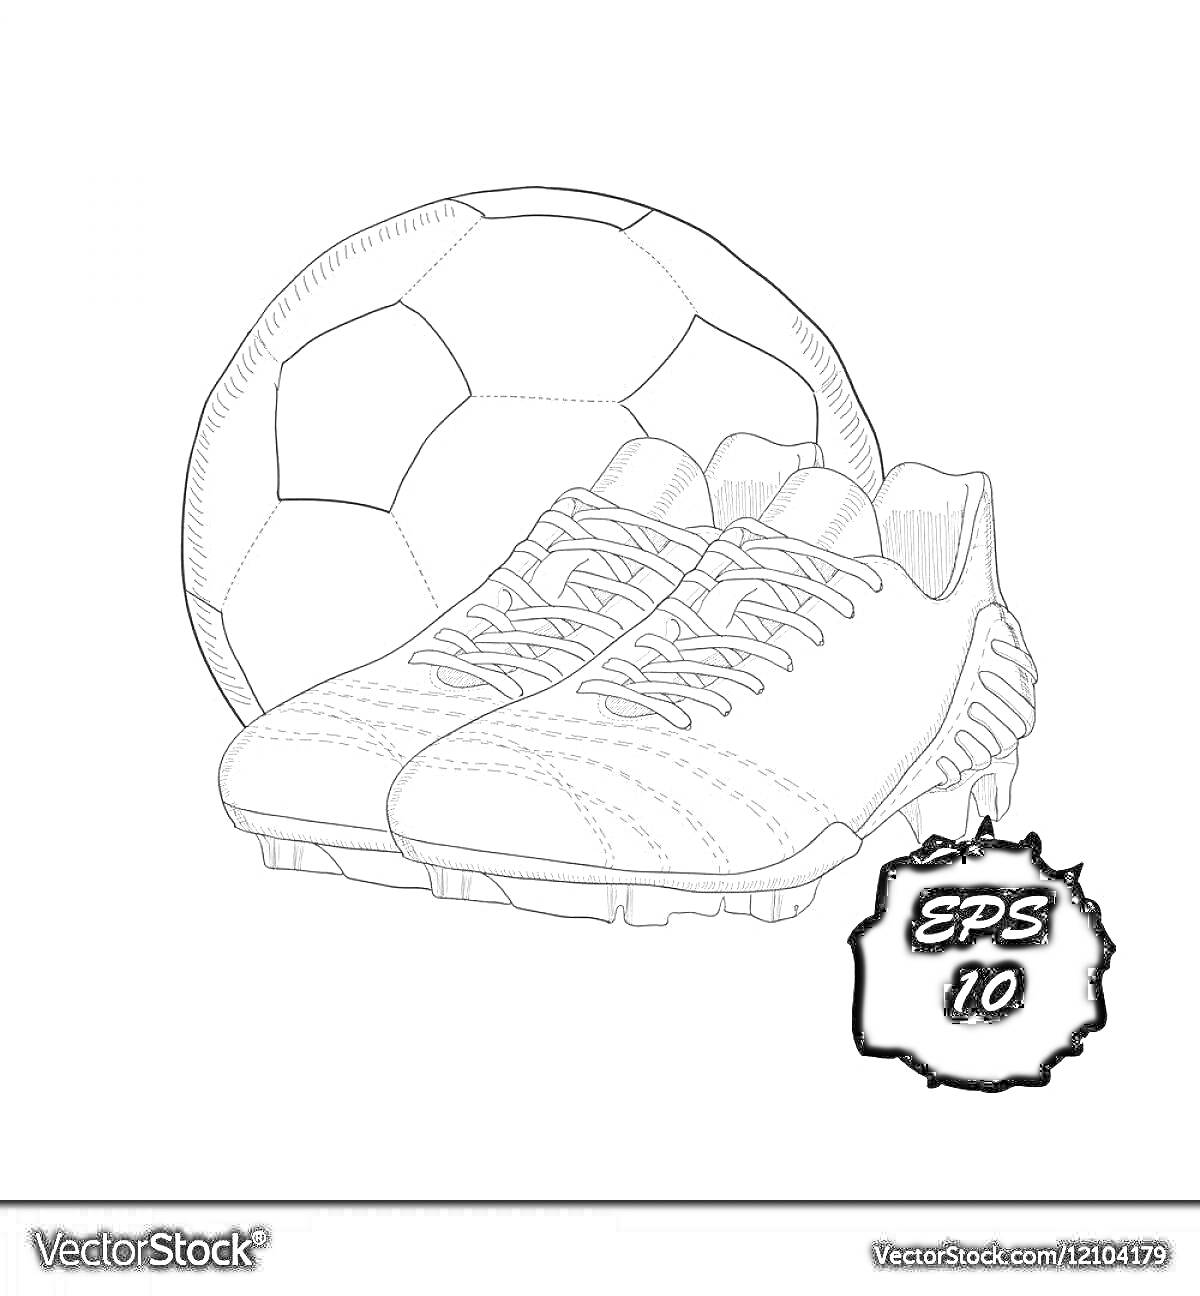 На раскраске изображено: Футбольный мяч, Спортивная обувь, Футбол, Спортивное снаряжение